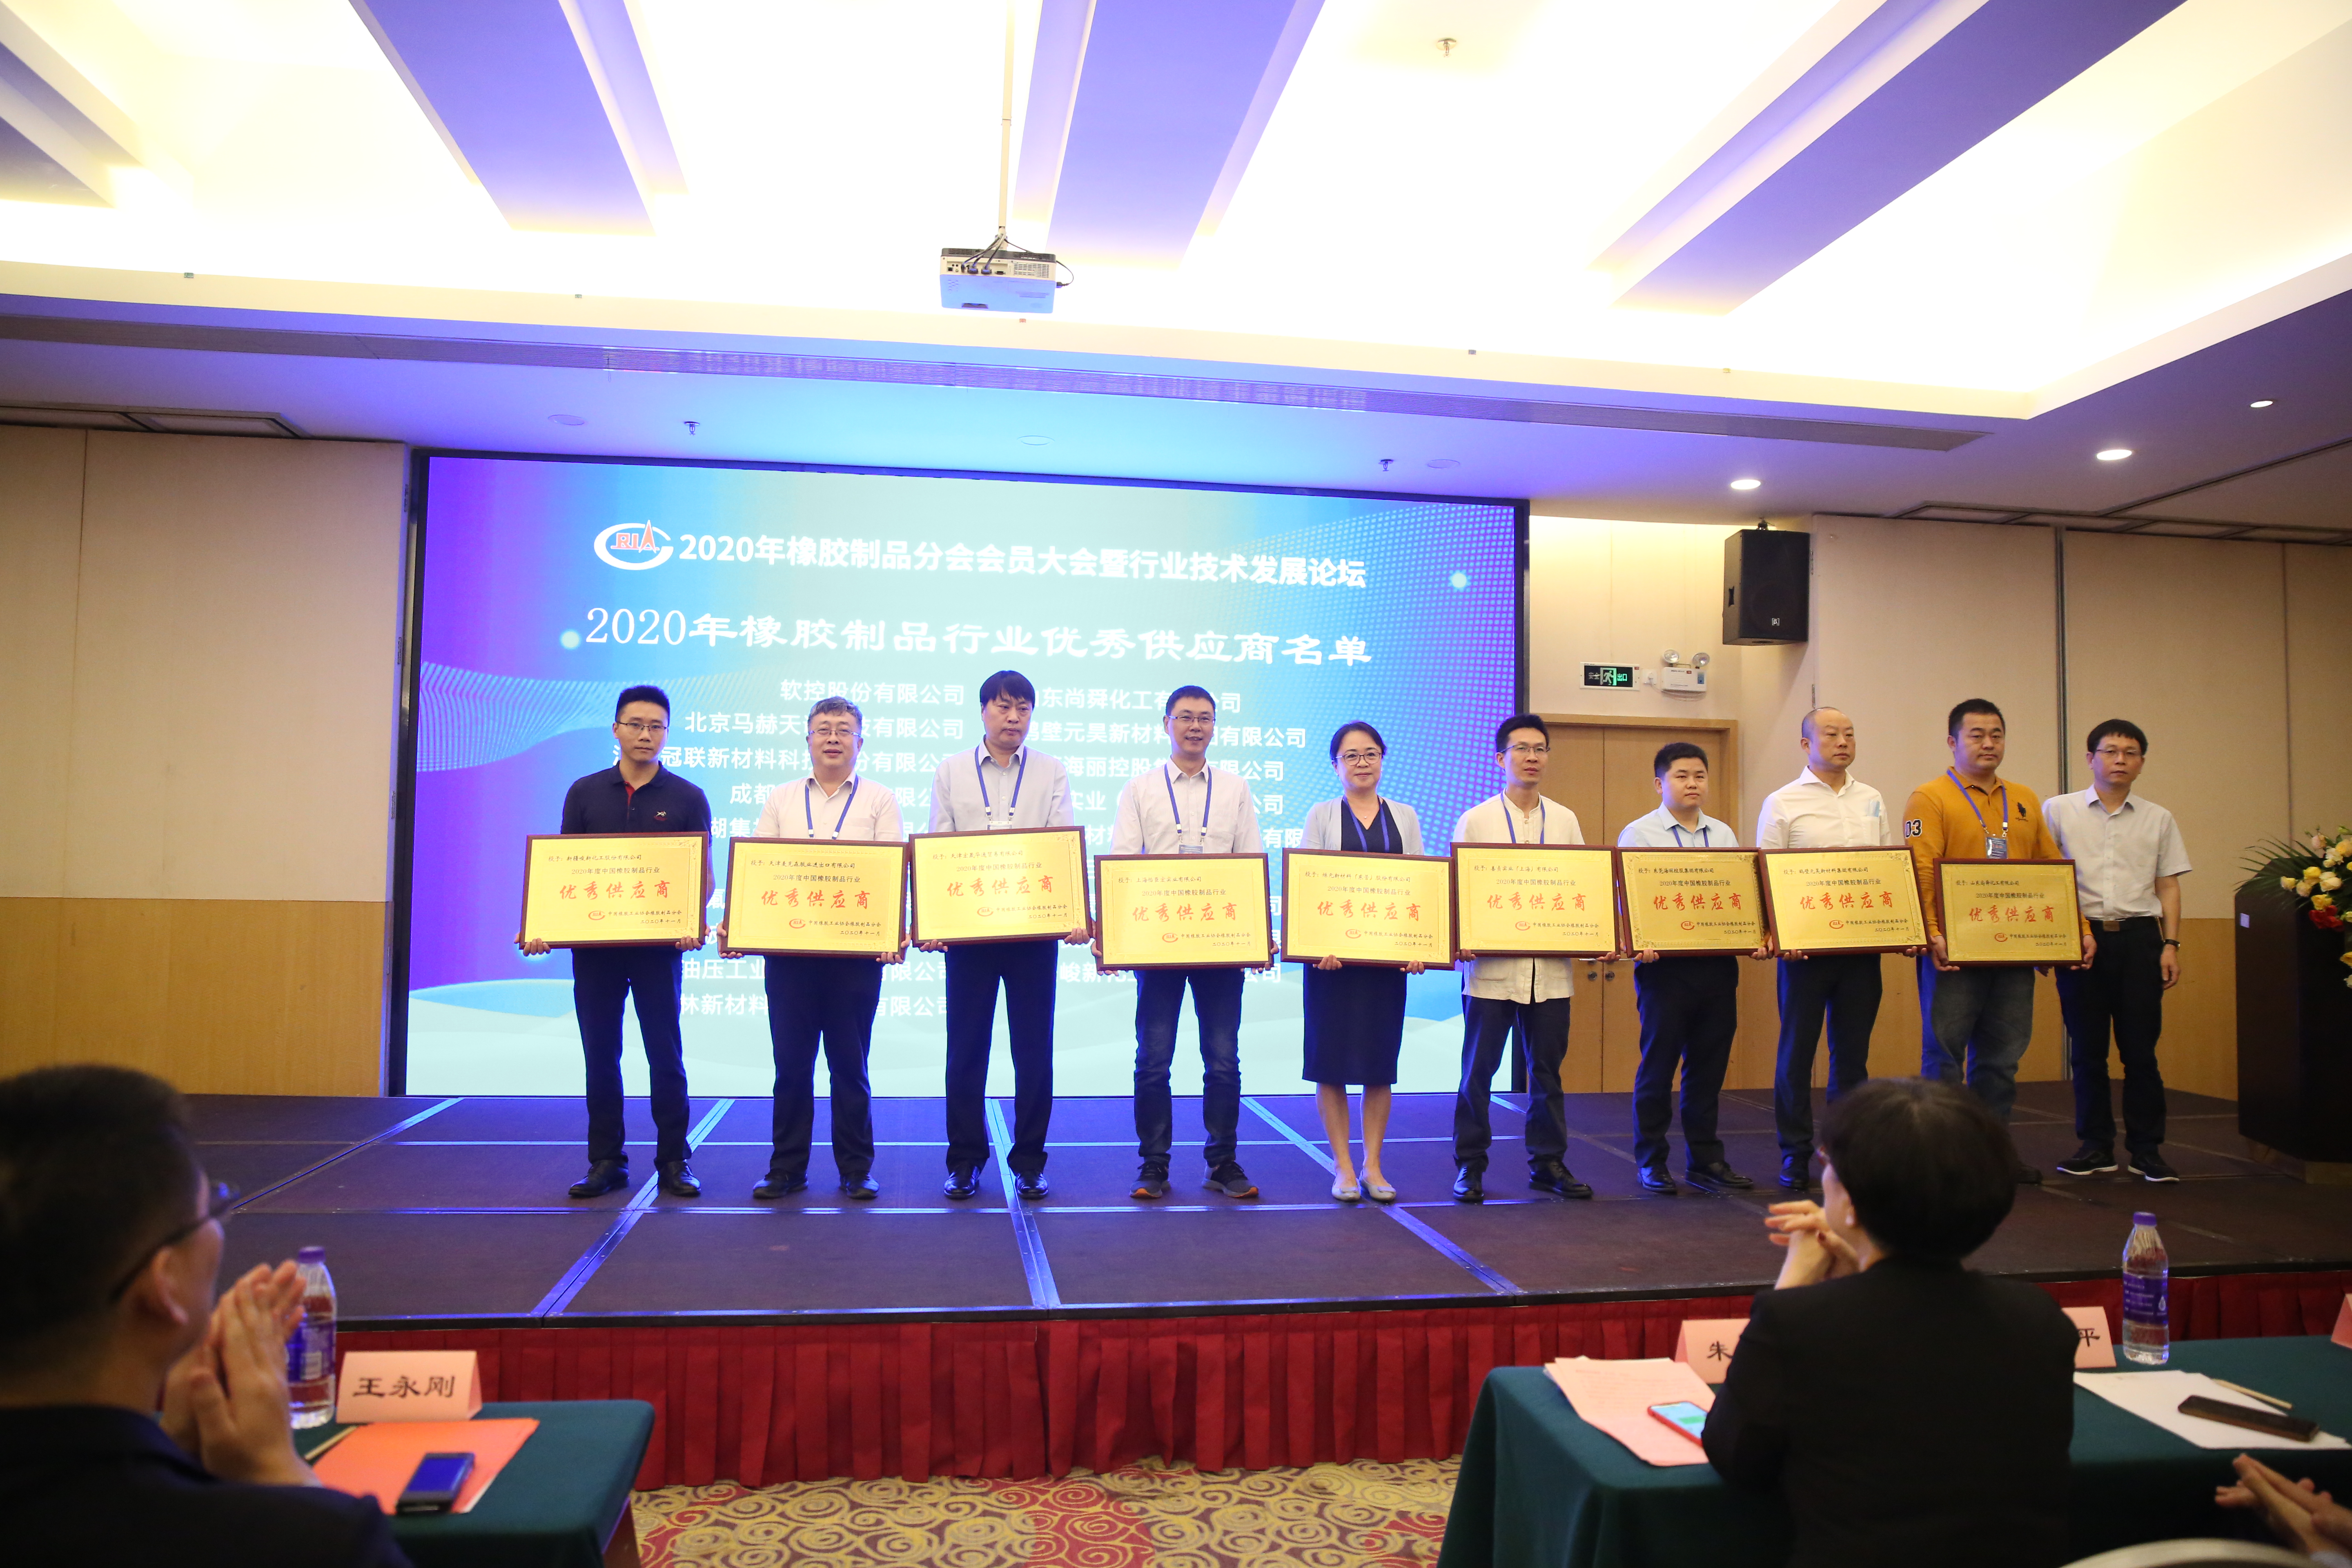 米乐m6登录米乐m6下载页面喜获中国橡胶制品行业“2020年度优秀供应商”荣誉称号